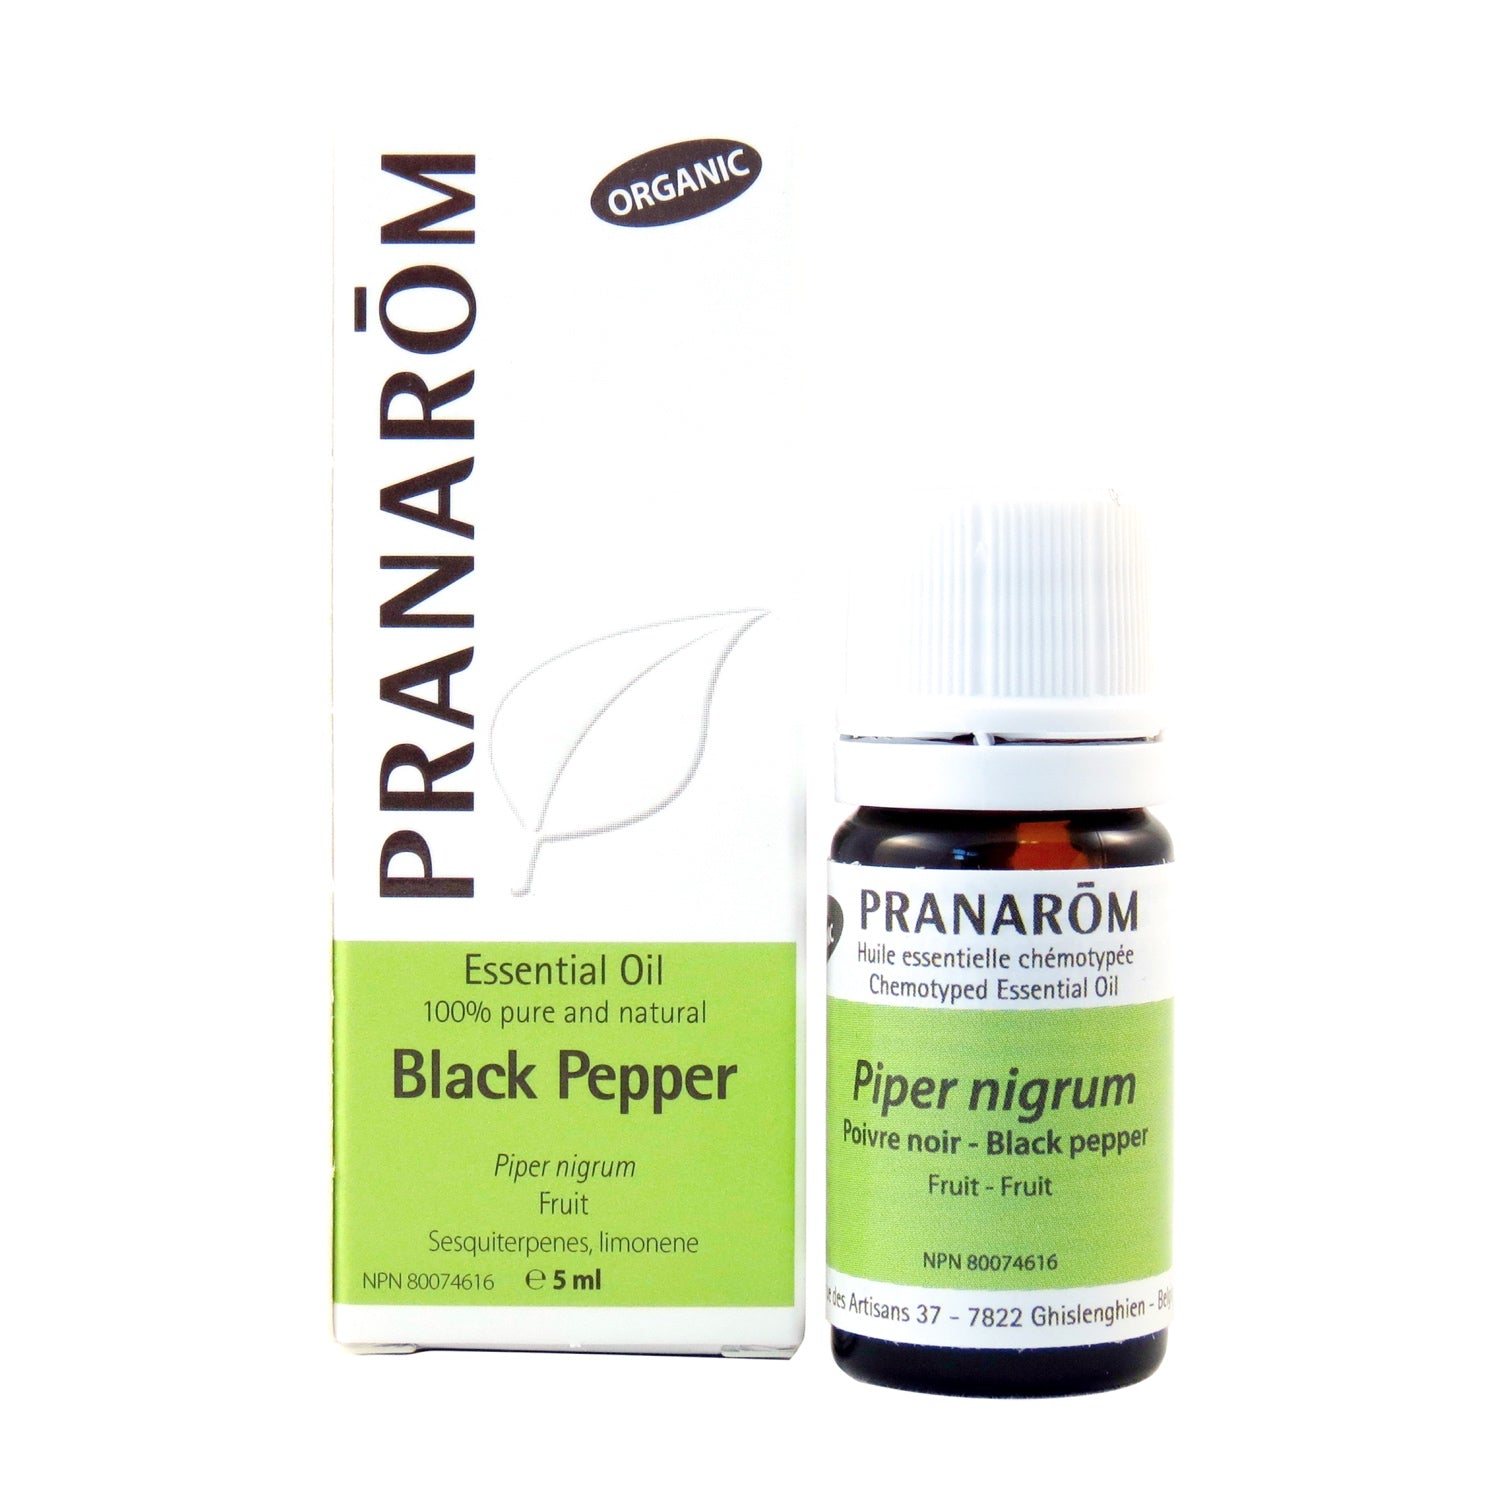 Pranarom 100% Pure Organic Black Pepper Essential Oil 5ml